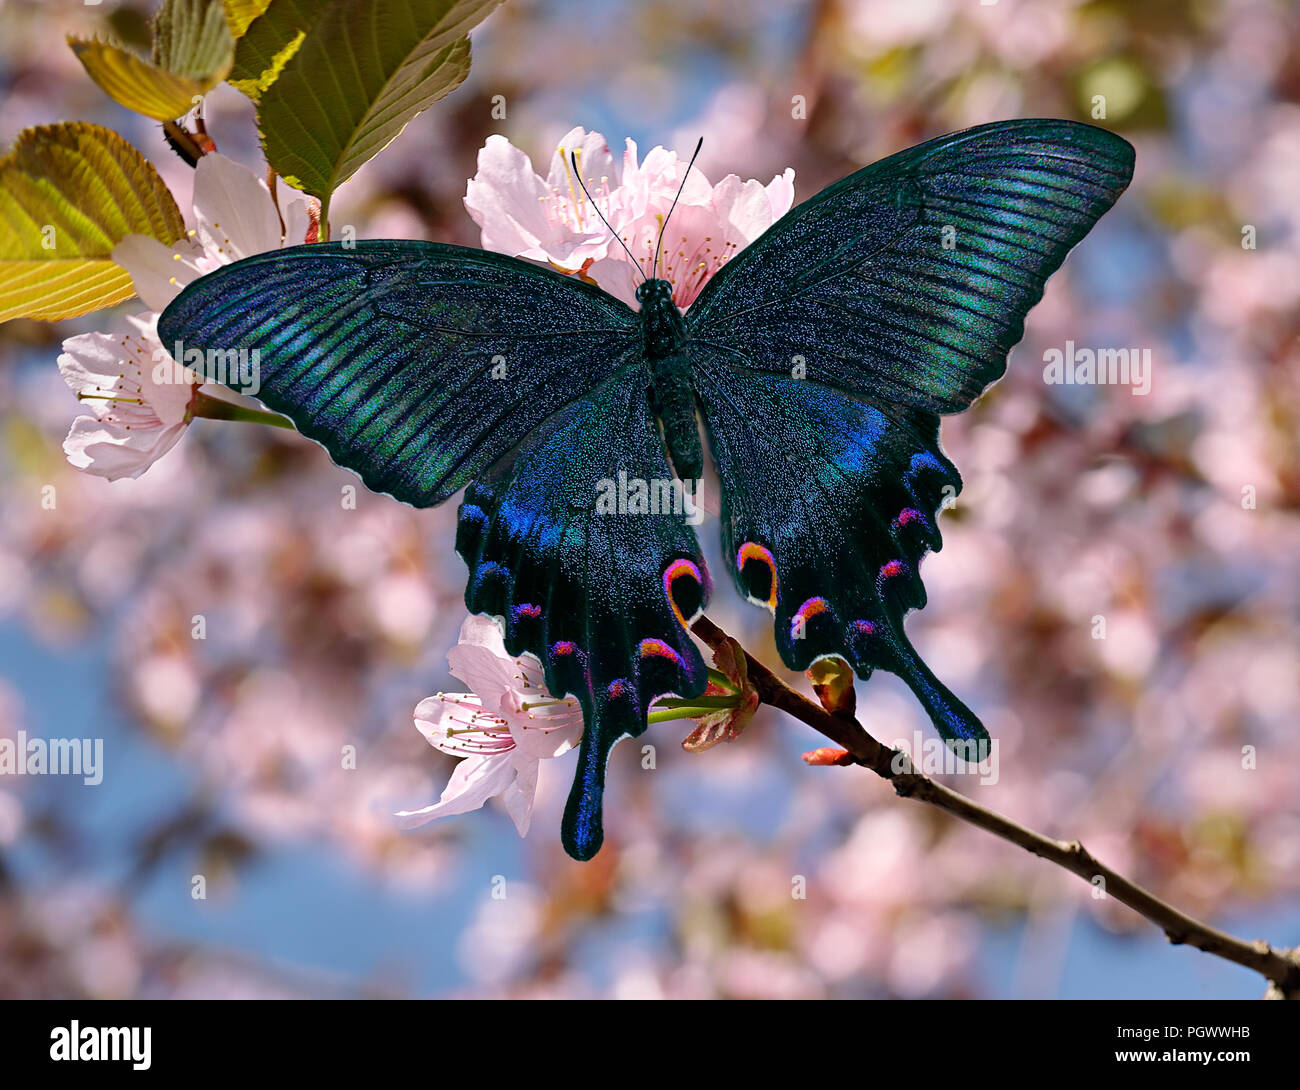 Butterfly Papilio maackii alpin ou swallowtail noir ou bleu, de la Famille des Papilionidae machaon, sur Rose Sakura ou oriental cherry blossom with blurred che Banque D'Images